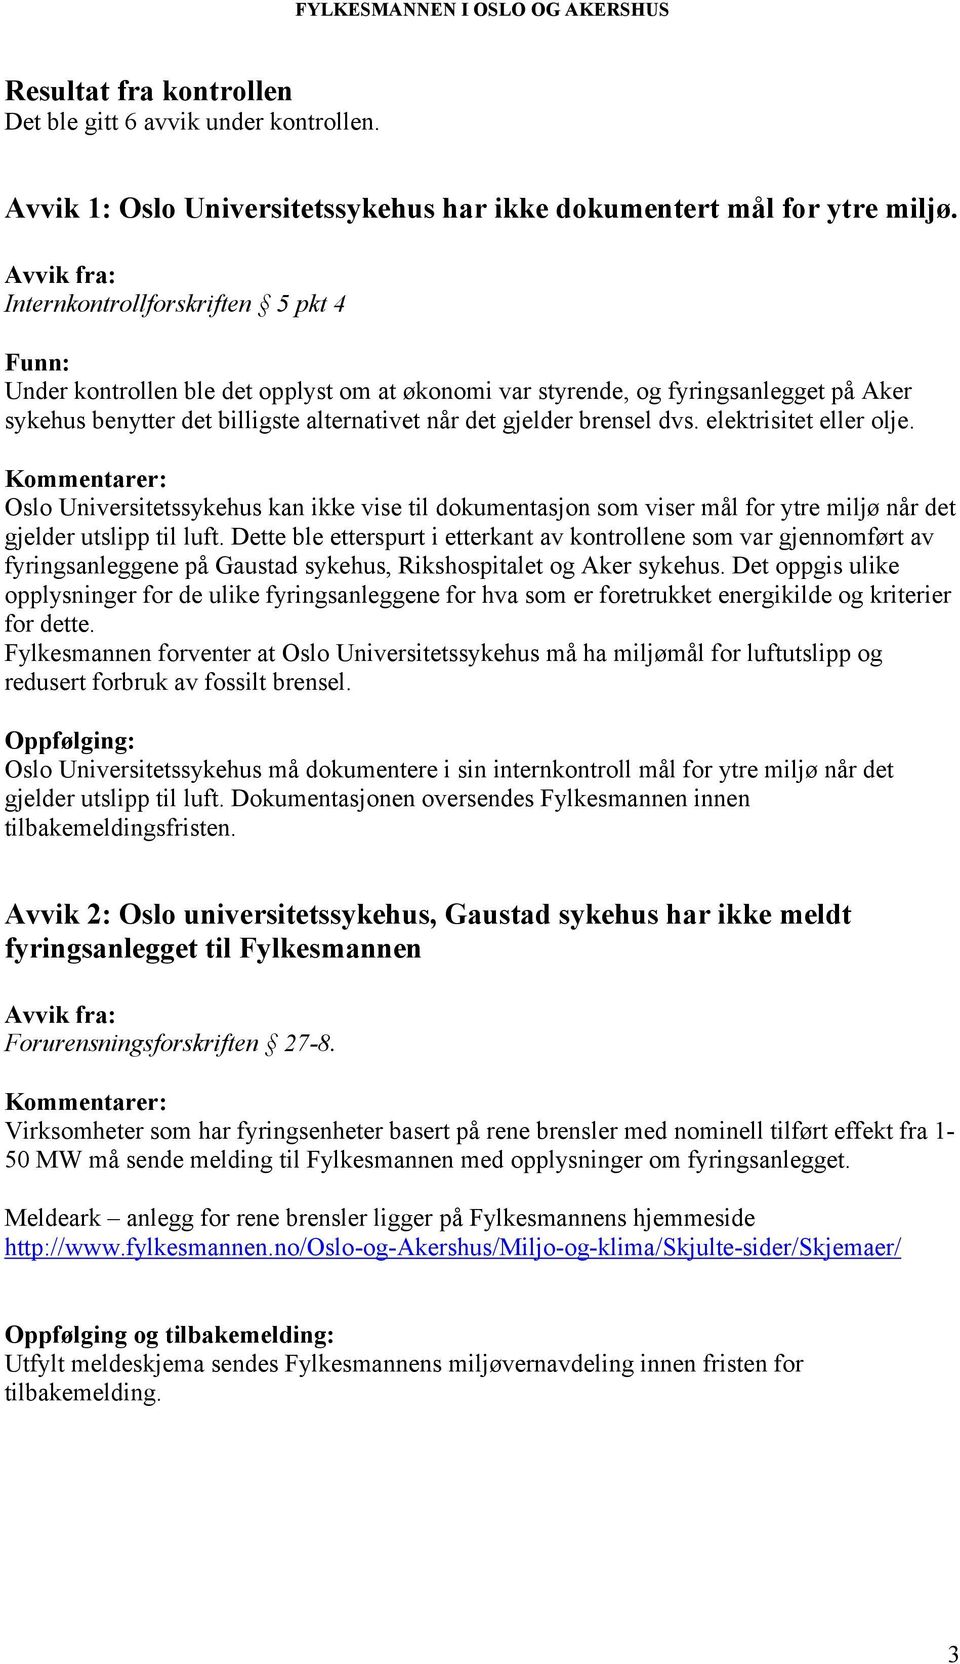 elektrisitet eller olje. Oslo Universitetssykehus kan ikke vise til dokumentasjon som viser mål for ytre miljø når det gjelder utslipp til luft.